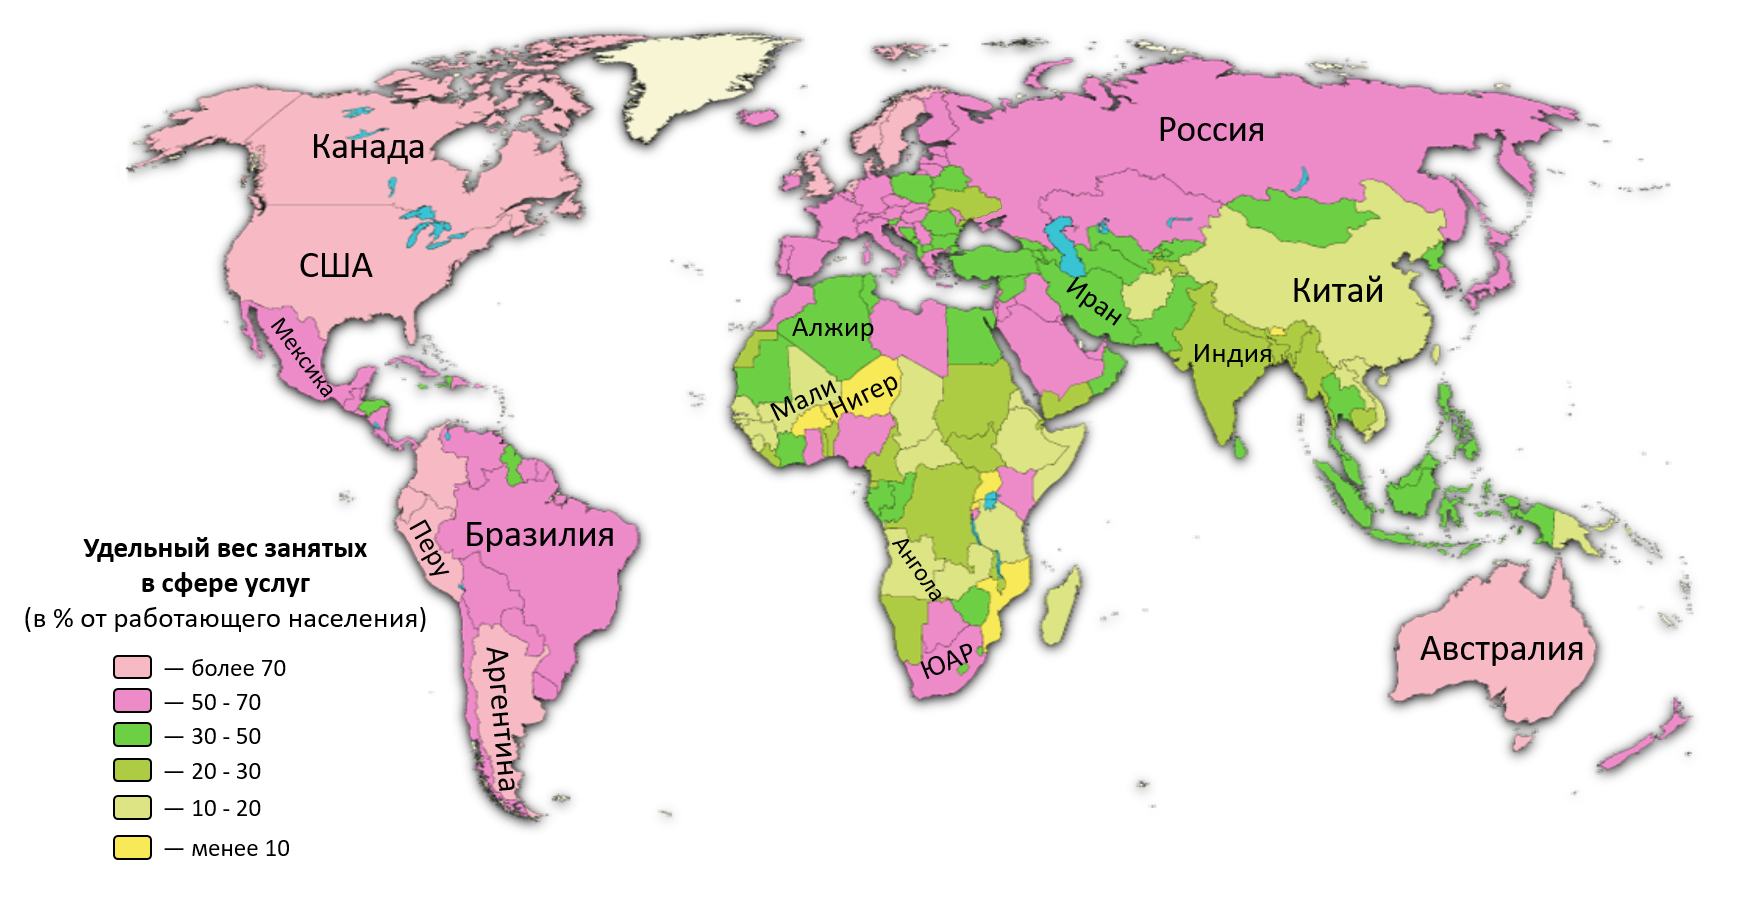 Развитые и развивающиеся страны карта. Развивающиеся страны на карте. Сфера услуг страны Лидеры.